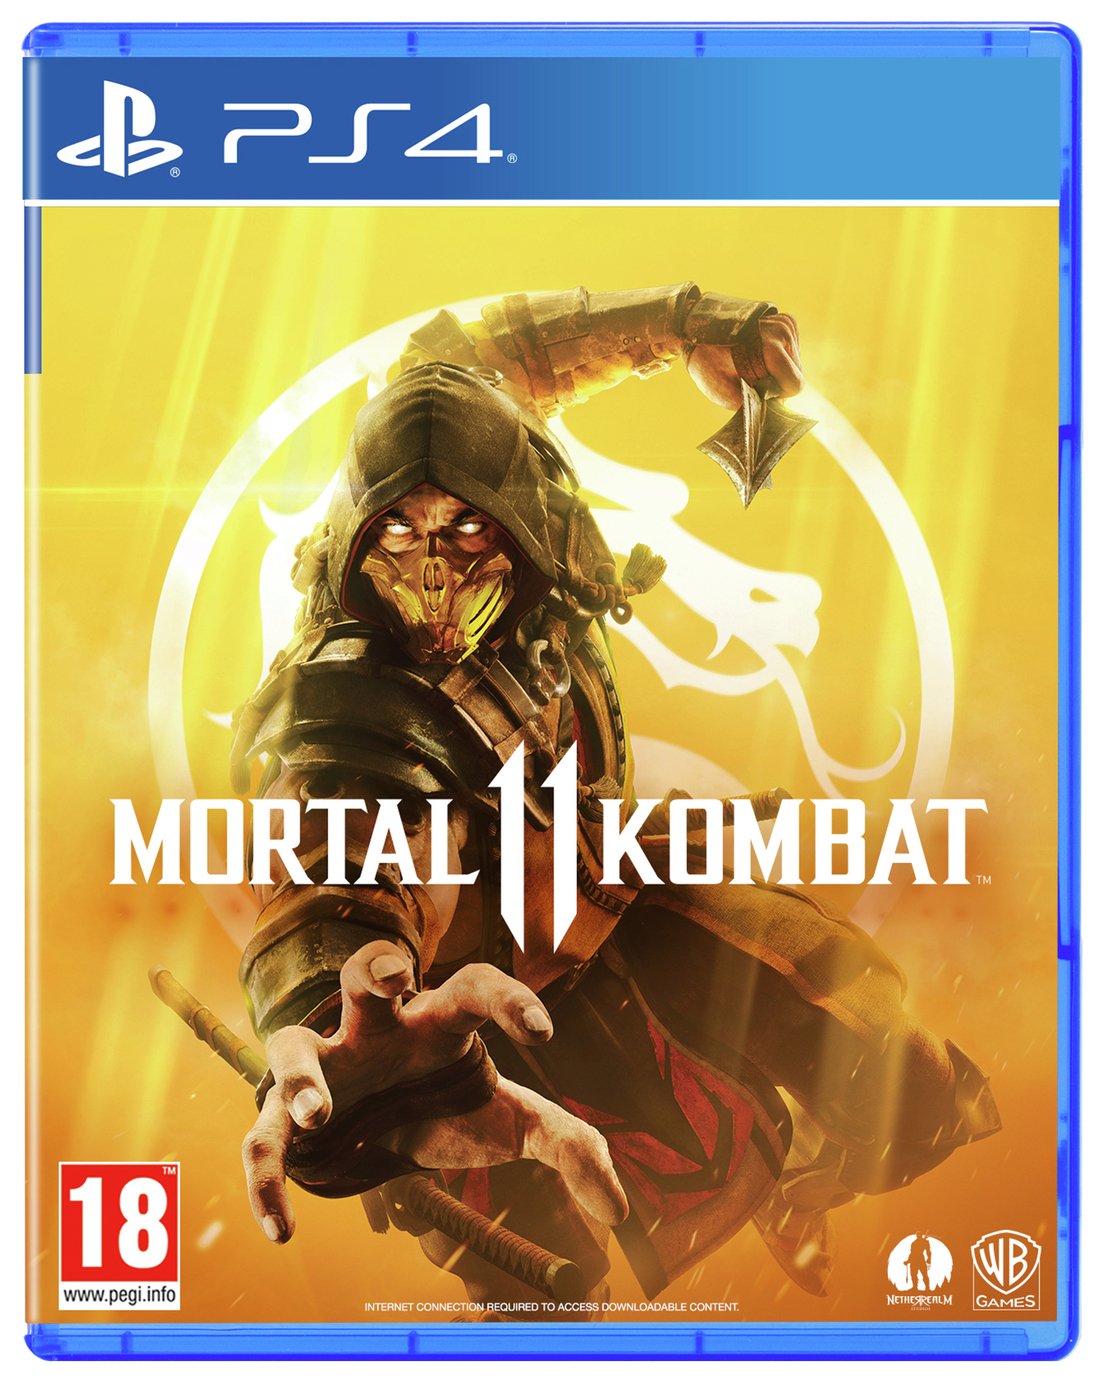 Mortal Kombat 11 PS4 Game Review